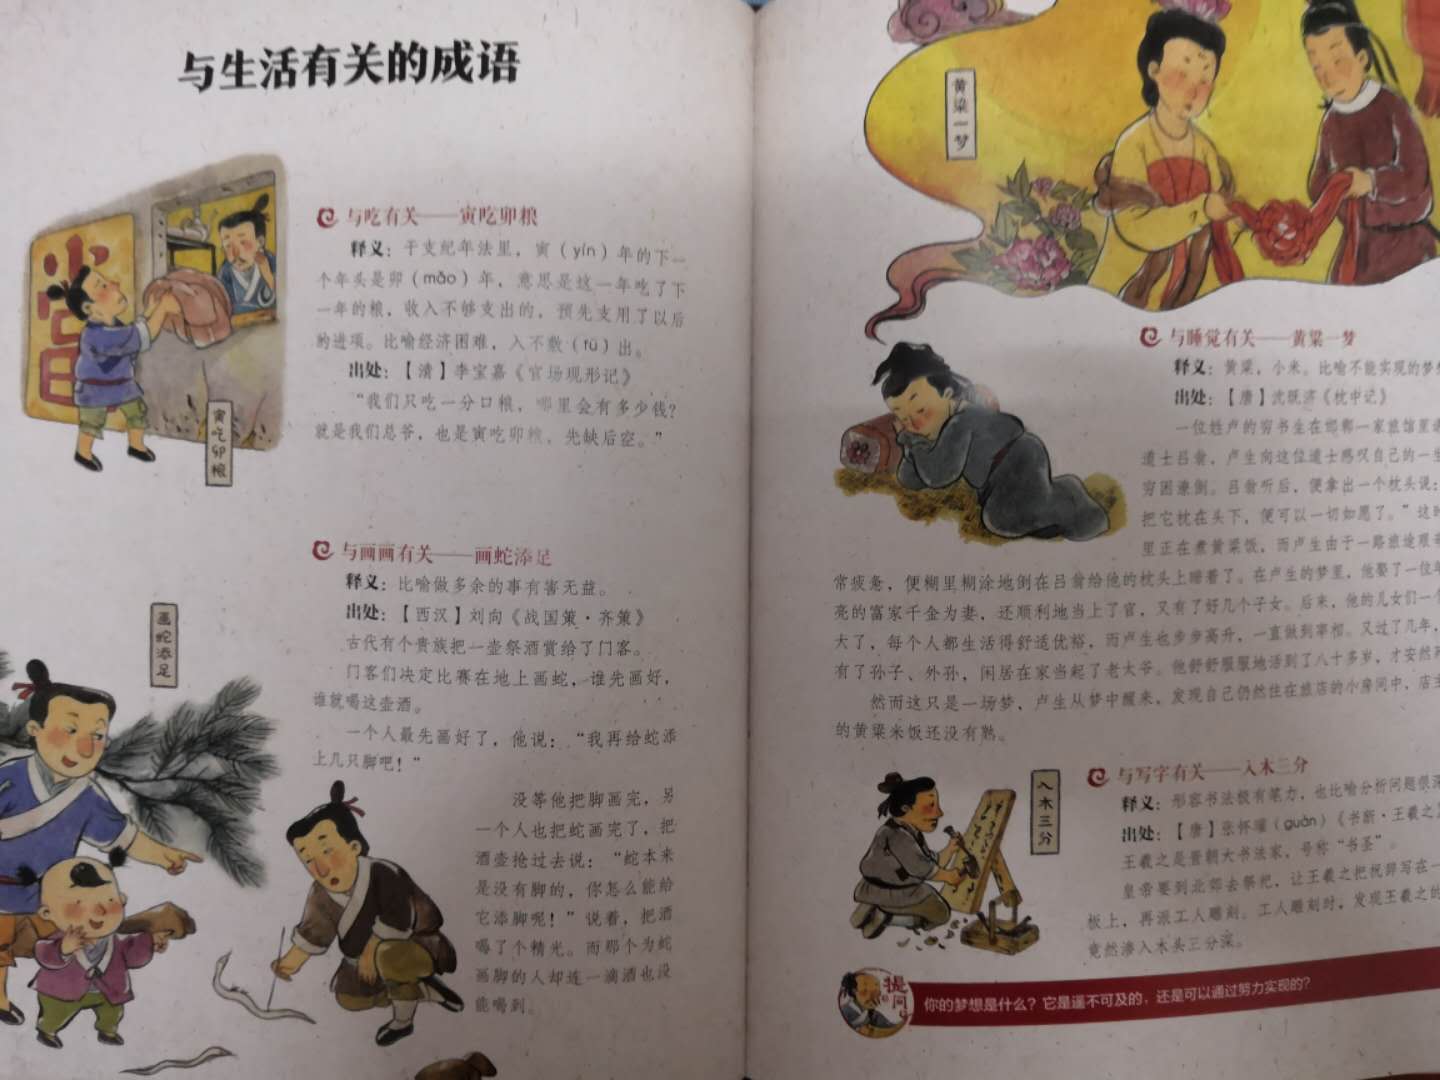 通过《中国诗词大会》喜欢上了蒙曼老师，有蒙曼老师主编的这套关于中国传统文化的书，就买来和孩子们一起品读。首先这套书真的不像别的传统文化的书那样枯燥无味，书上的语言风趣幽默，小孩子理解起来比较容易；其次，这套书的画风很有中国味儿！可见编著者的良苦用心了！最后一点是我最最喜欢的，就是上面的不常见的生僻字或者多音字都有拼音标注，真的是太太太方便阅读了。现在的孩子真是幸福啊！可以通过这么好的书来了解中国，这套书也适合送给外国友人，因为是蒙曼老师主编，必须推荐！特意拍些内页图片供大家参考。